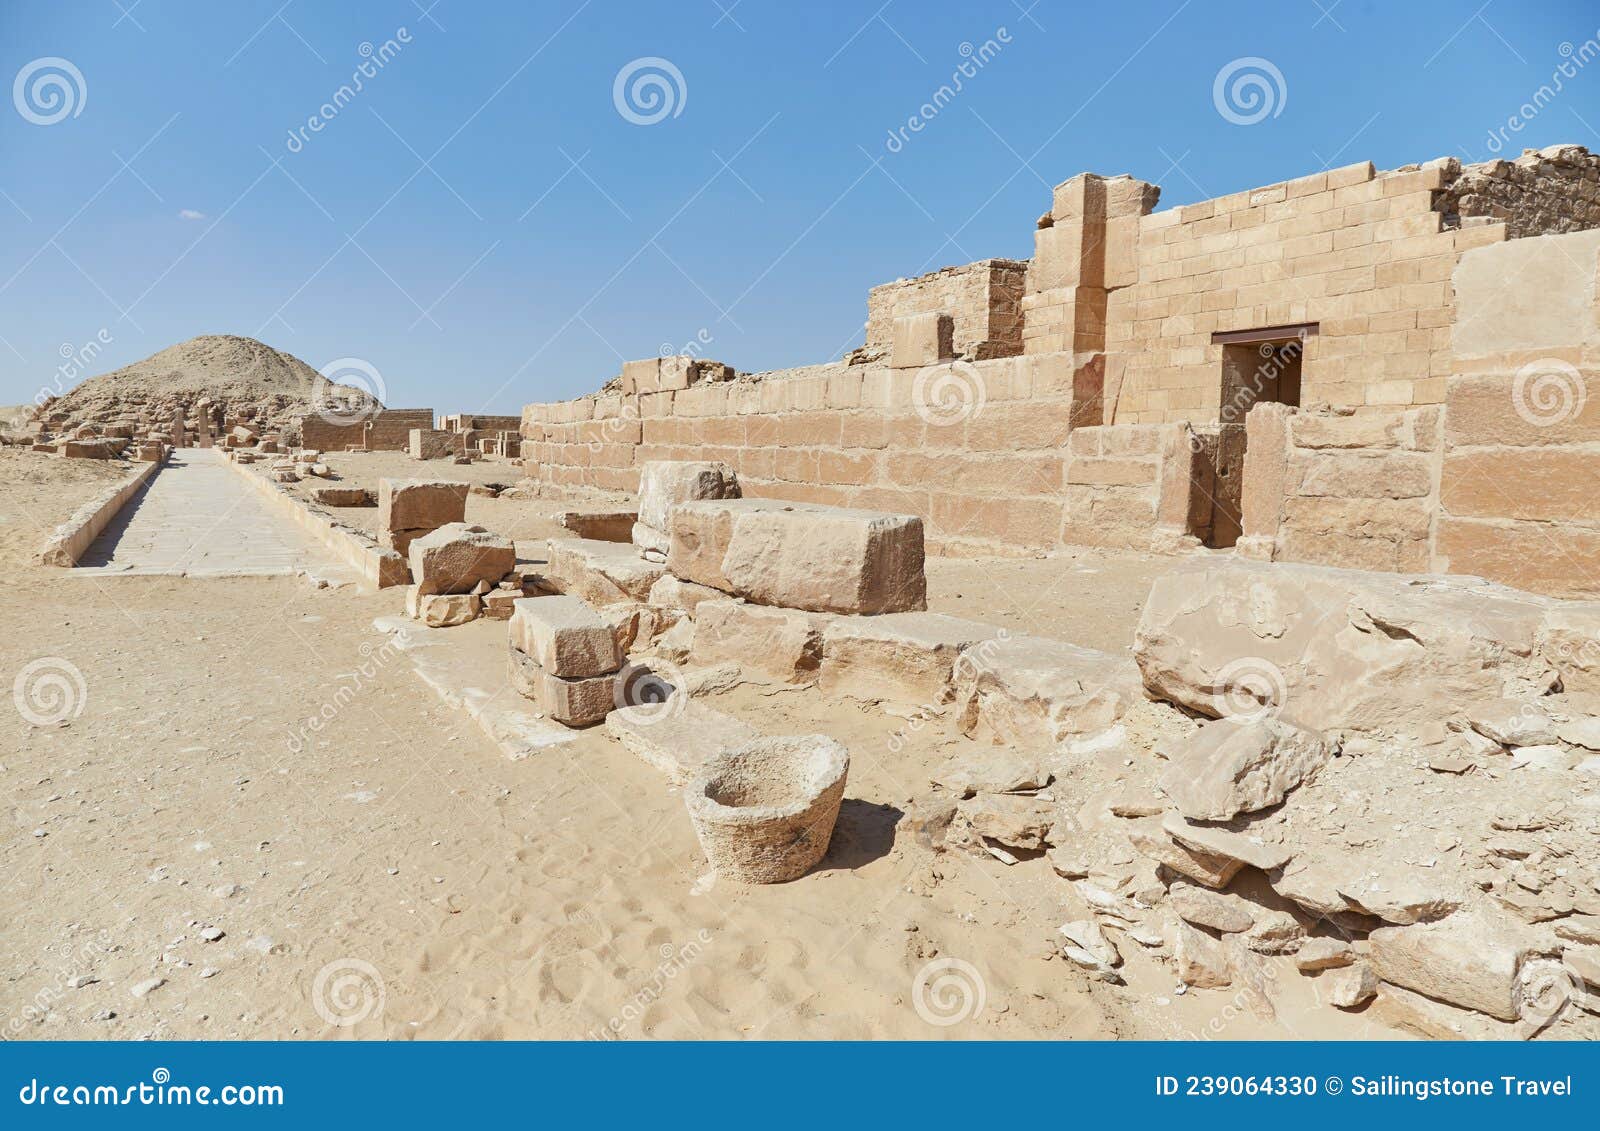 the unas causeway at saqqara